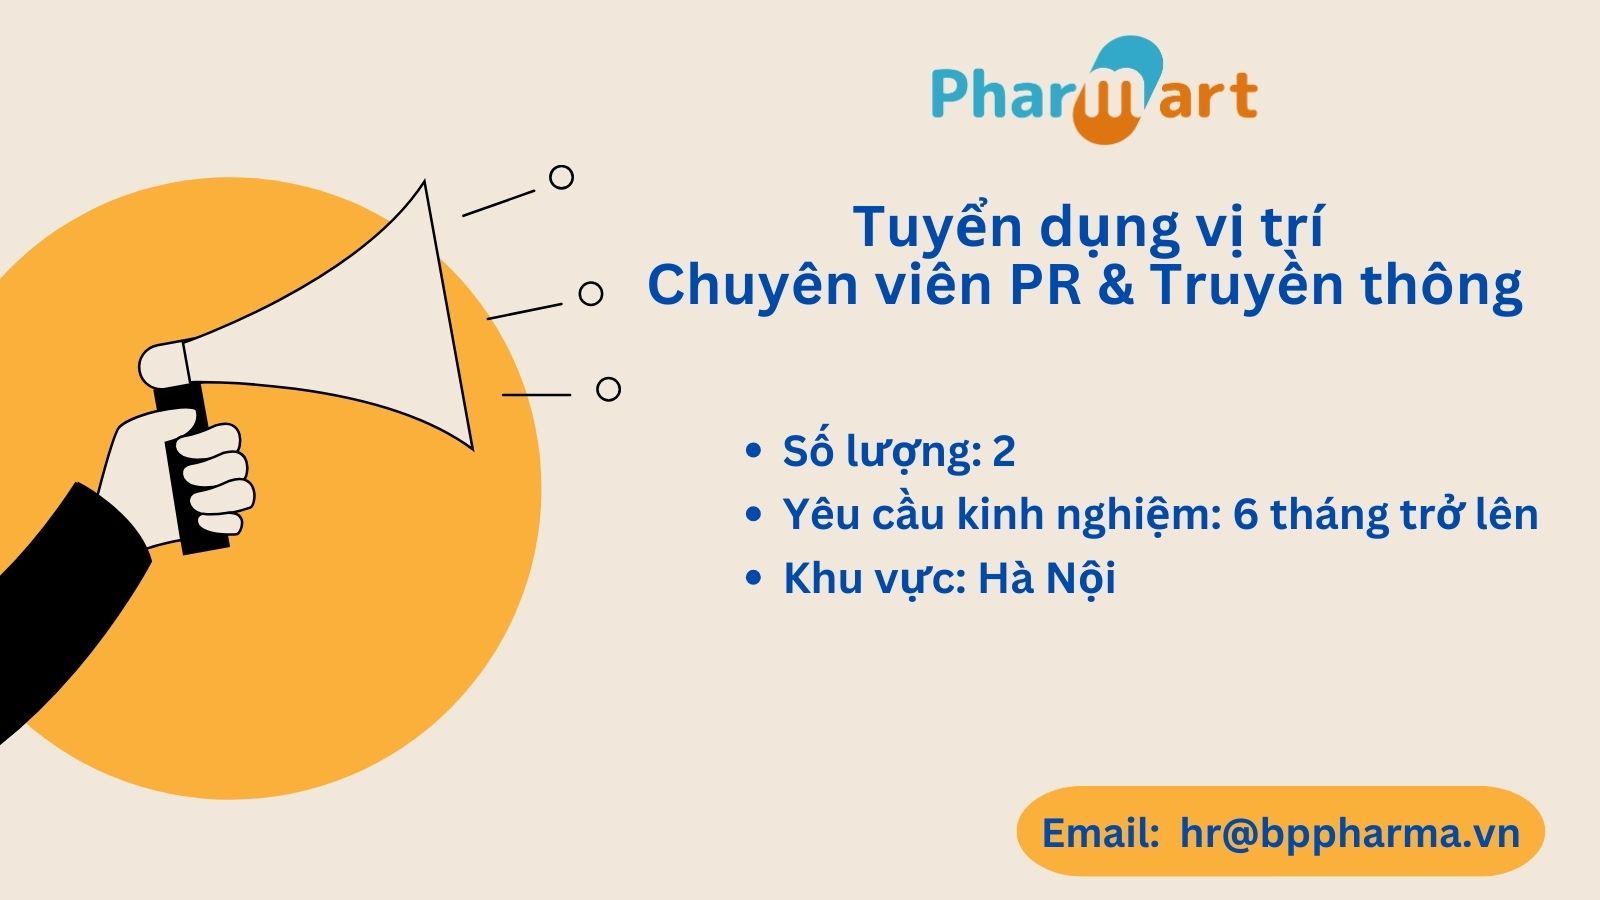 [Hà Nội] Pharmart.vn - Tuyển dụng Chuyên viên PR & Truyền thông